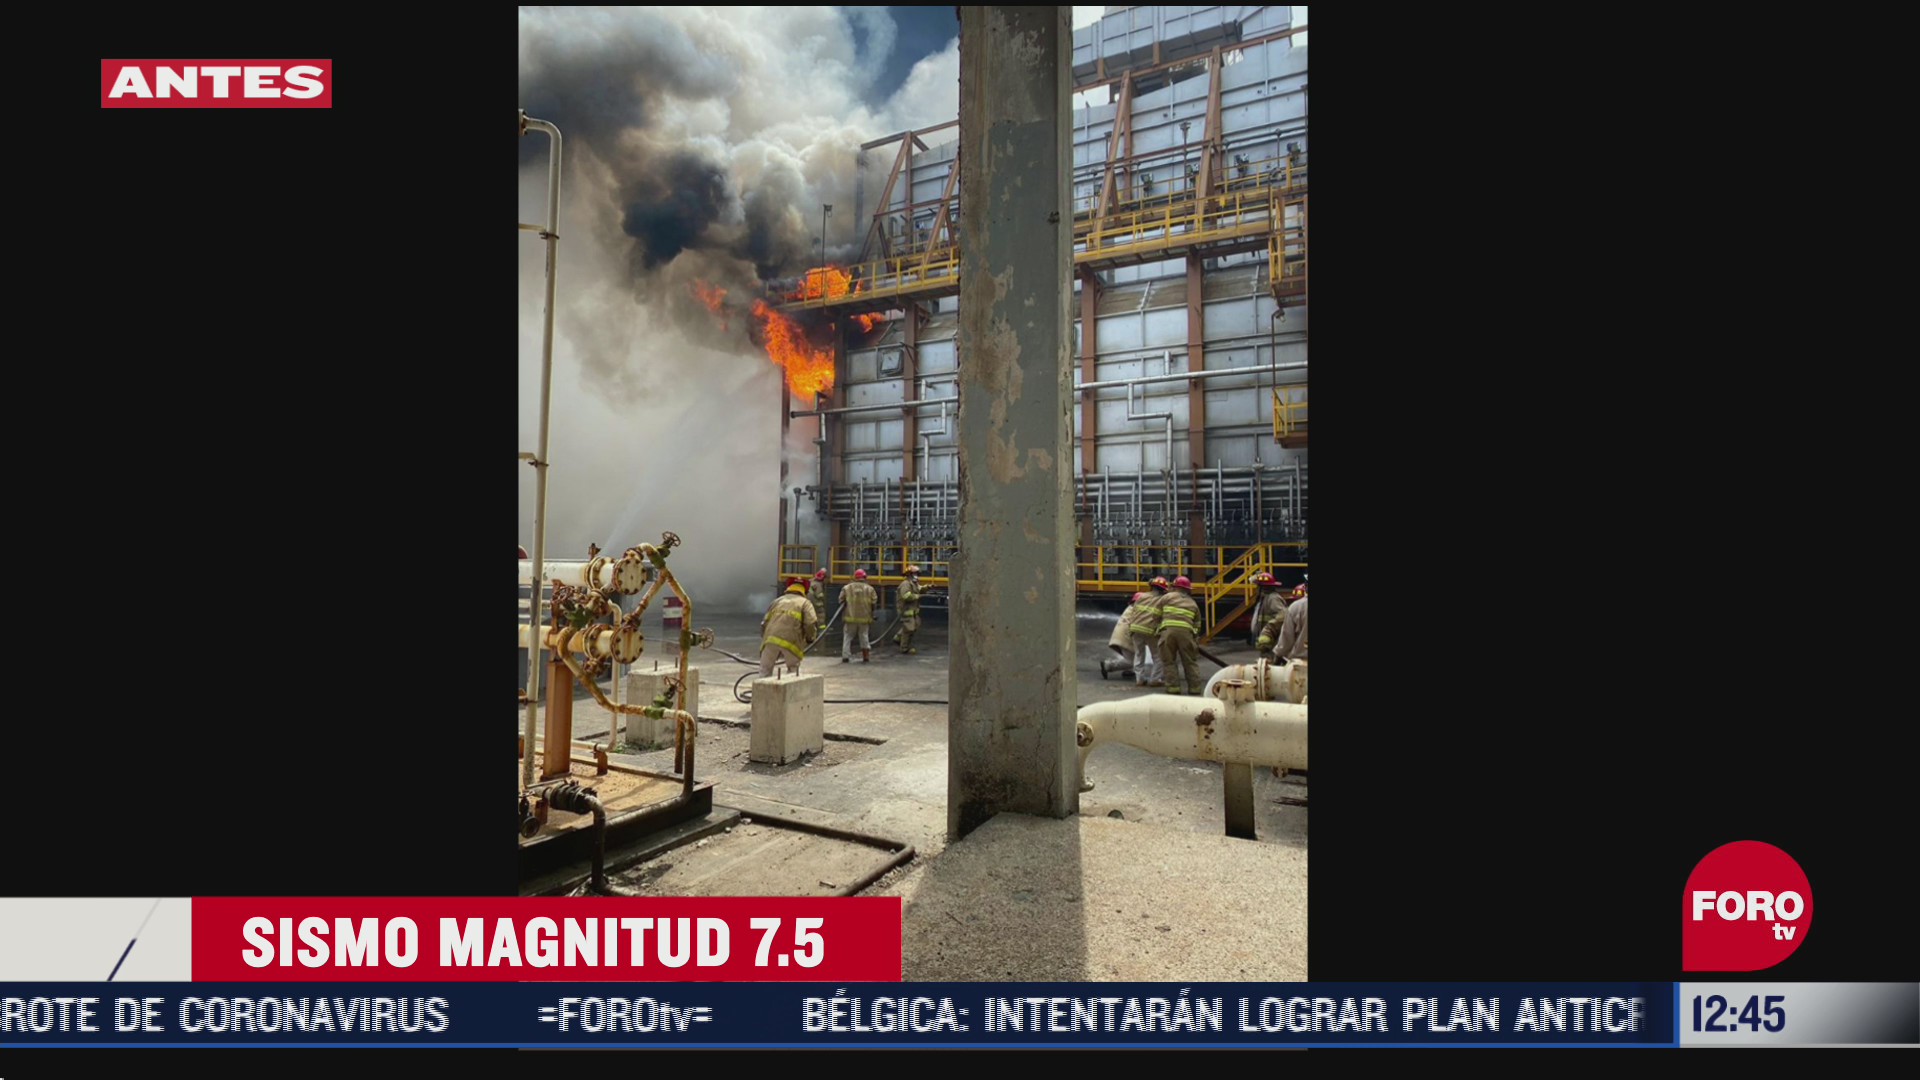 FOTO: se registra conato de incendio en una refineria de salina cruz tras sismo en oaxaca